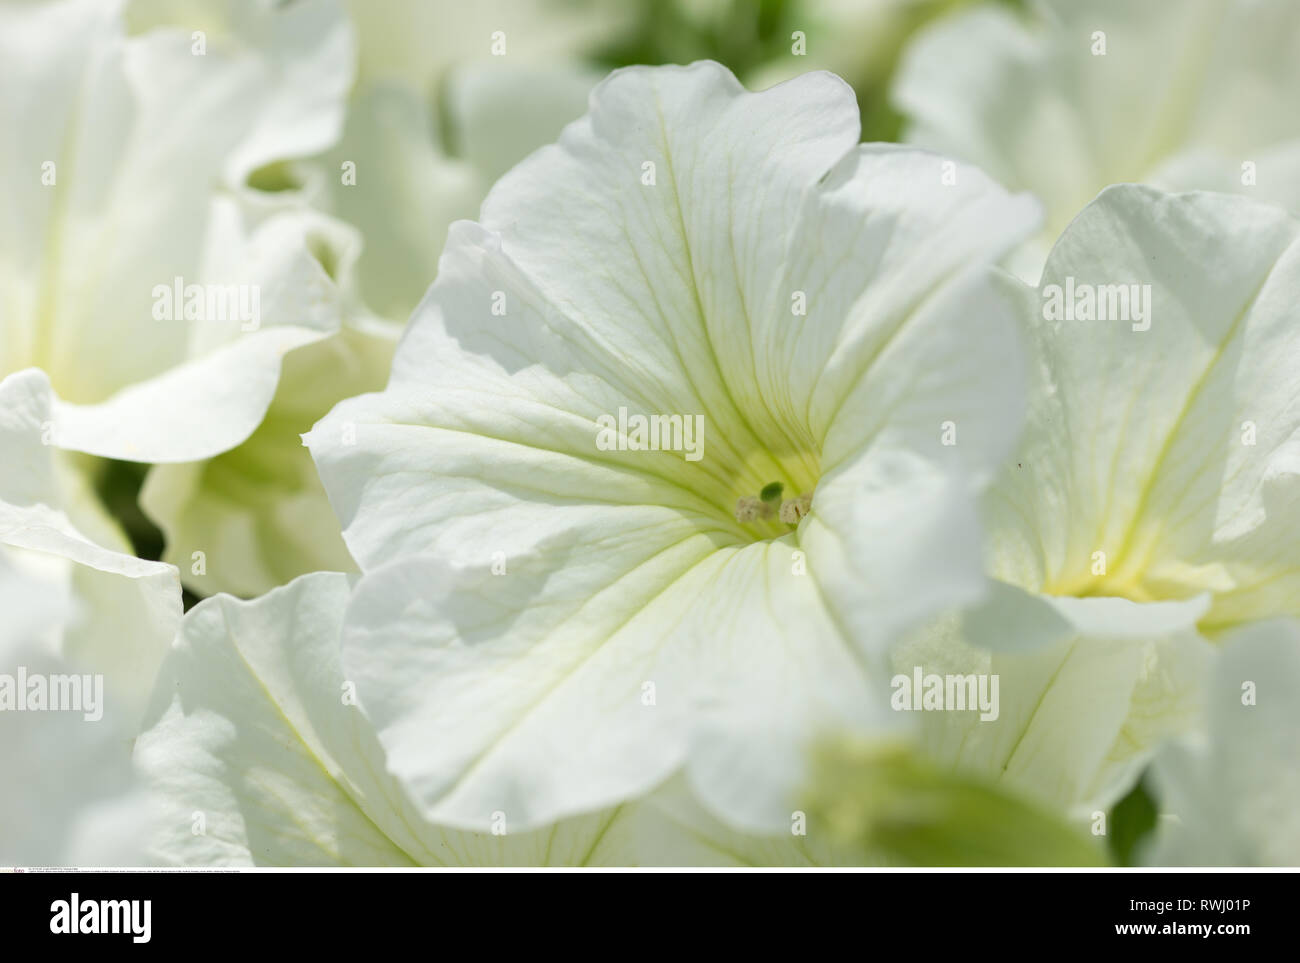 Botanik, Blüte eines whiten Surfinia, Vorsicht! Für Greetingcard-Use/Postcard-Use in deutschsprachigen Ländern gibt es einige Einschränkungen Stockfoto